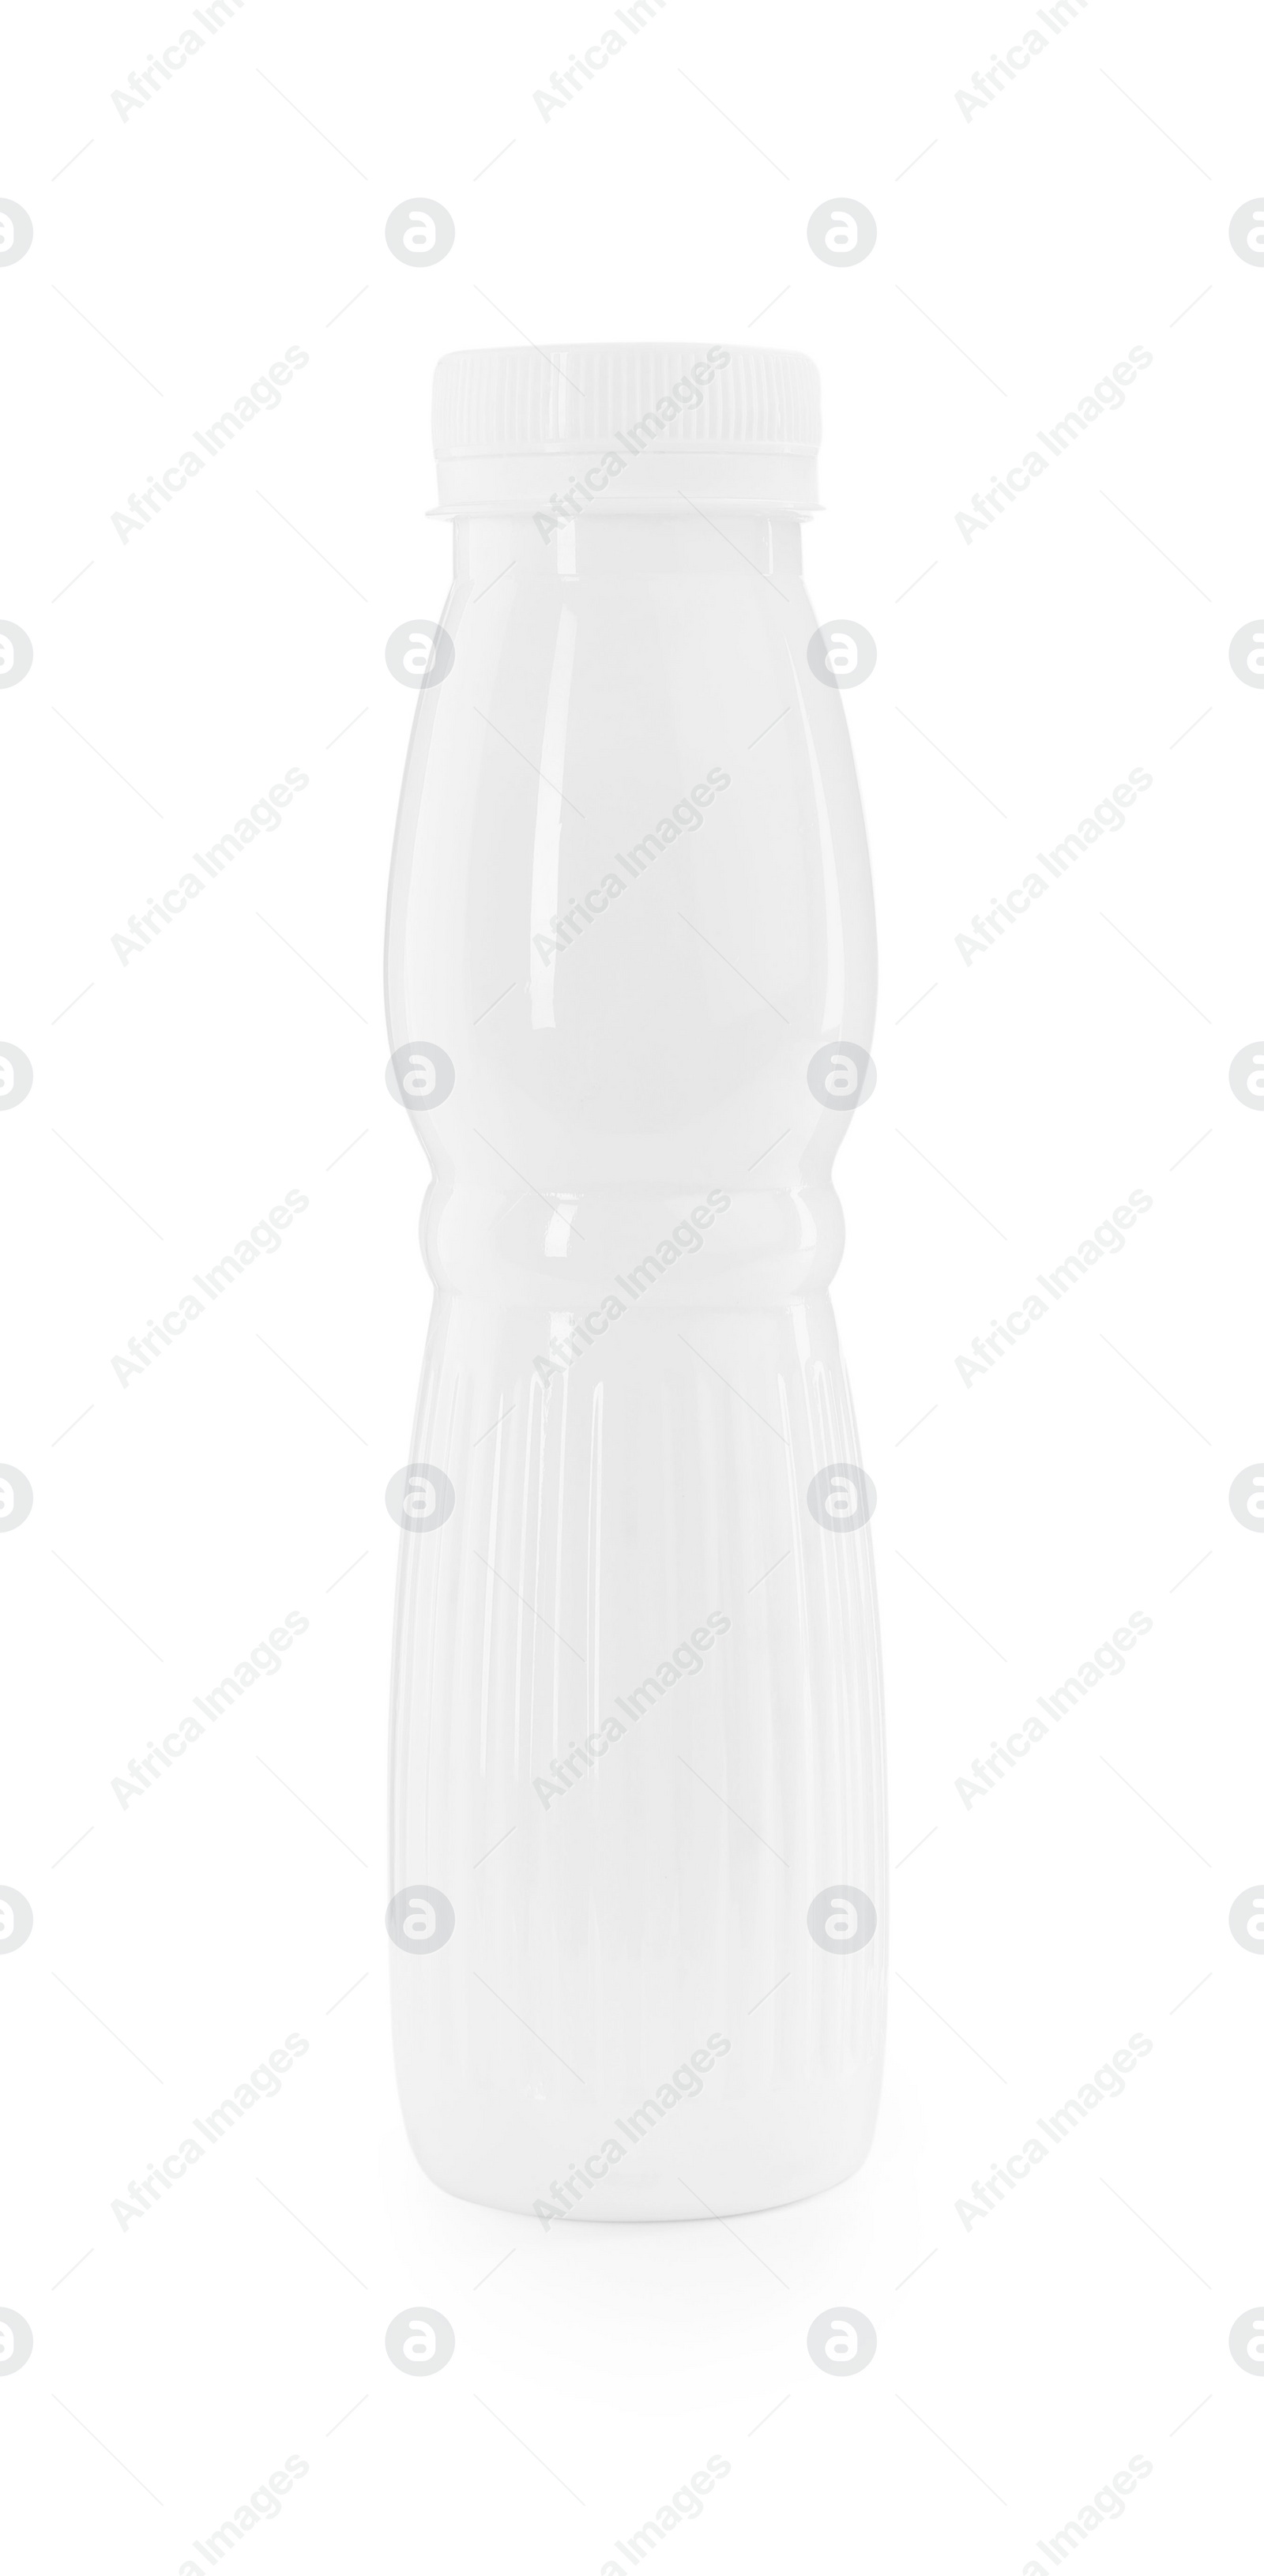 Photo of Tasty yogurt in bottle isolated on white